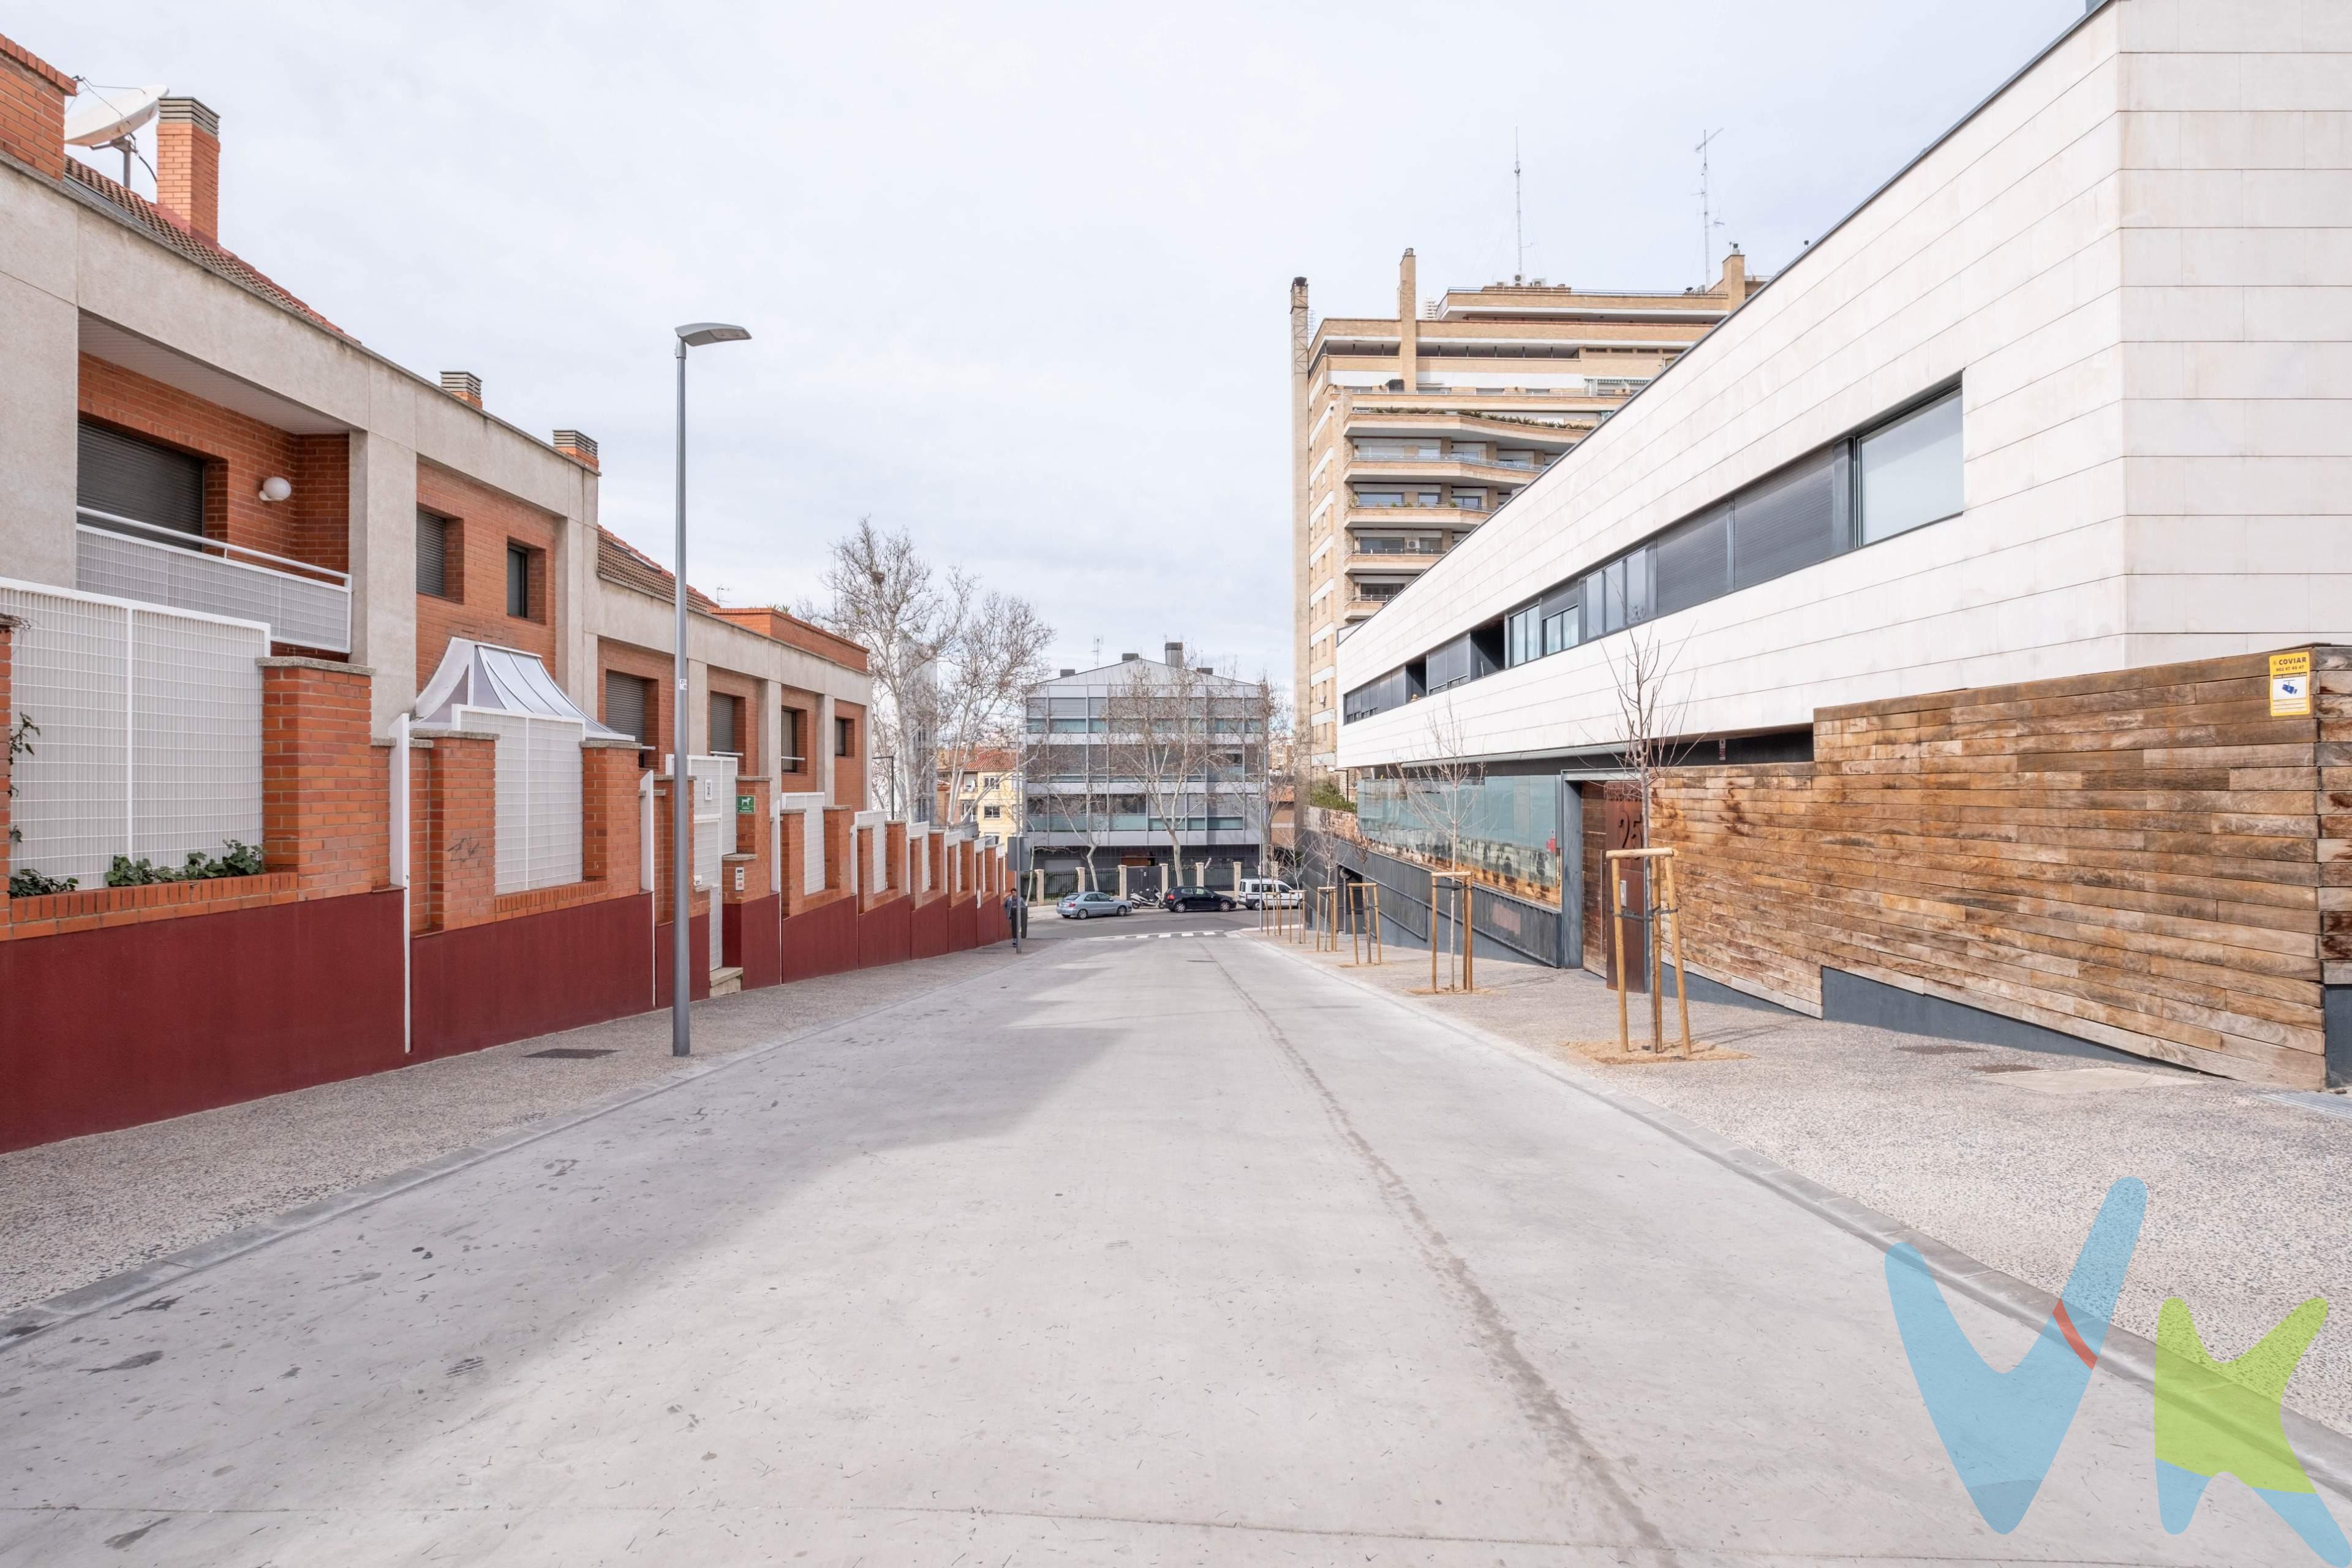 . ¡Venta de garaje en Paseo Ruiseñores, Zaragoza!. Ubicación privilegiada, seguridad las 24 horas. ¡Contáctanos para más detalles!